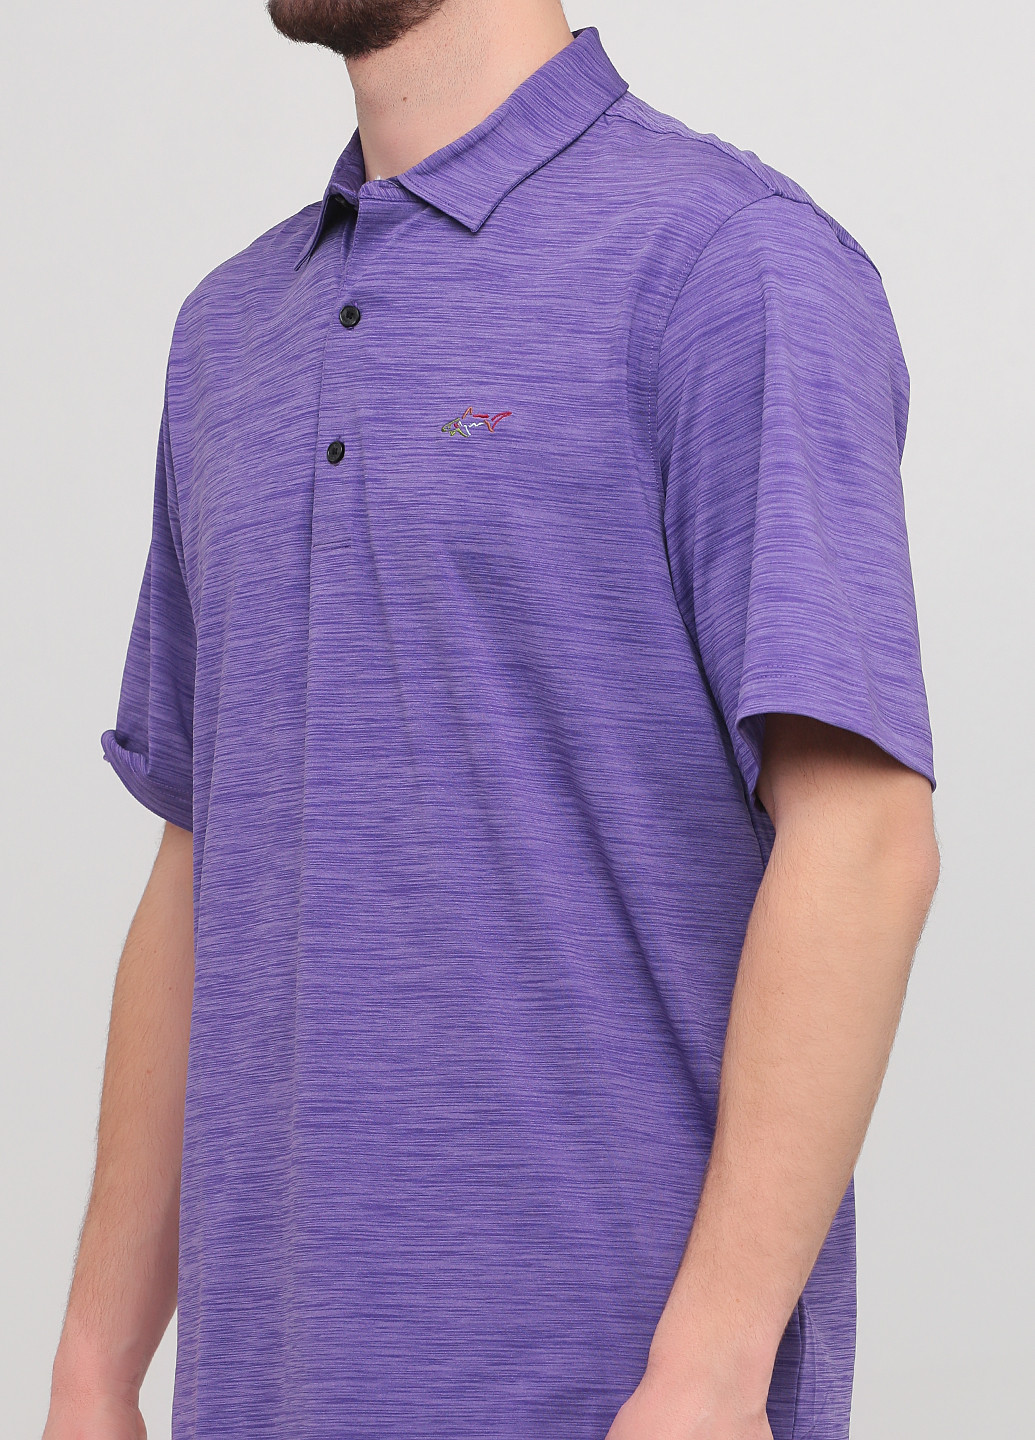 Фиолетовая футболка-поло для мужчин Greg Norman меланжевая